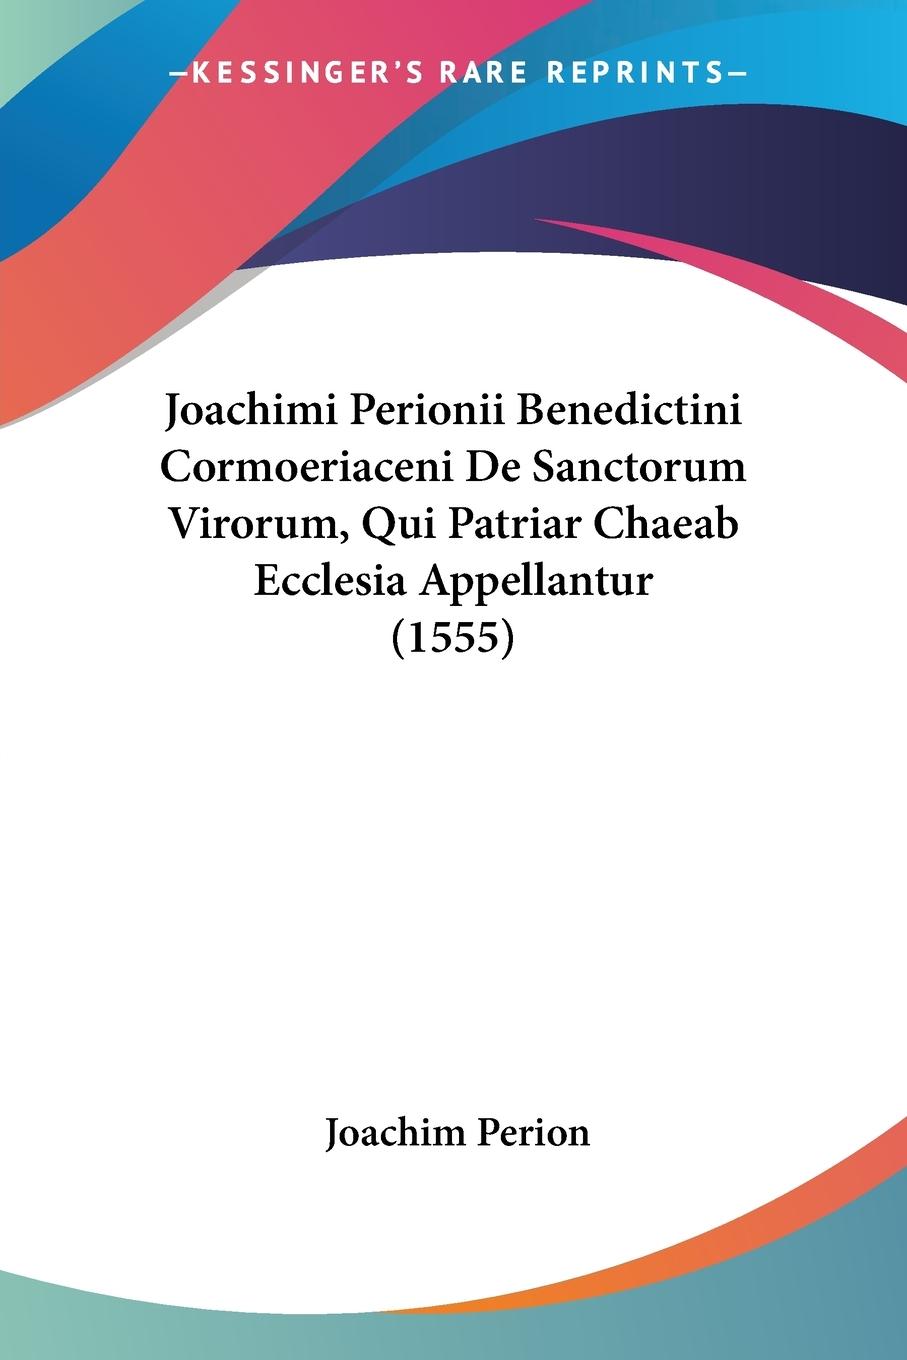 Joachimi Perionii Benedictini Cormoeriaceni De Sanctorum Virorum, Qui Patriar Chaeab Ecclesia Appellantur (1555) - Perion, Joachim